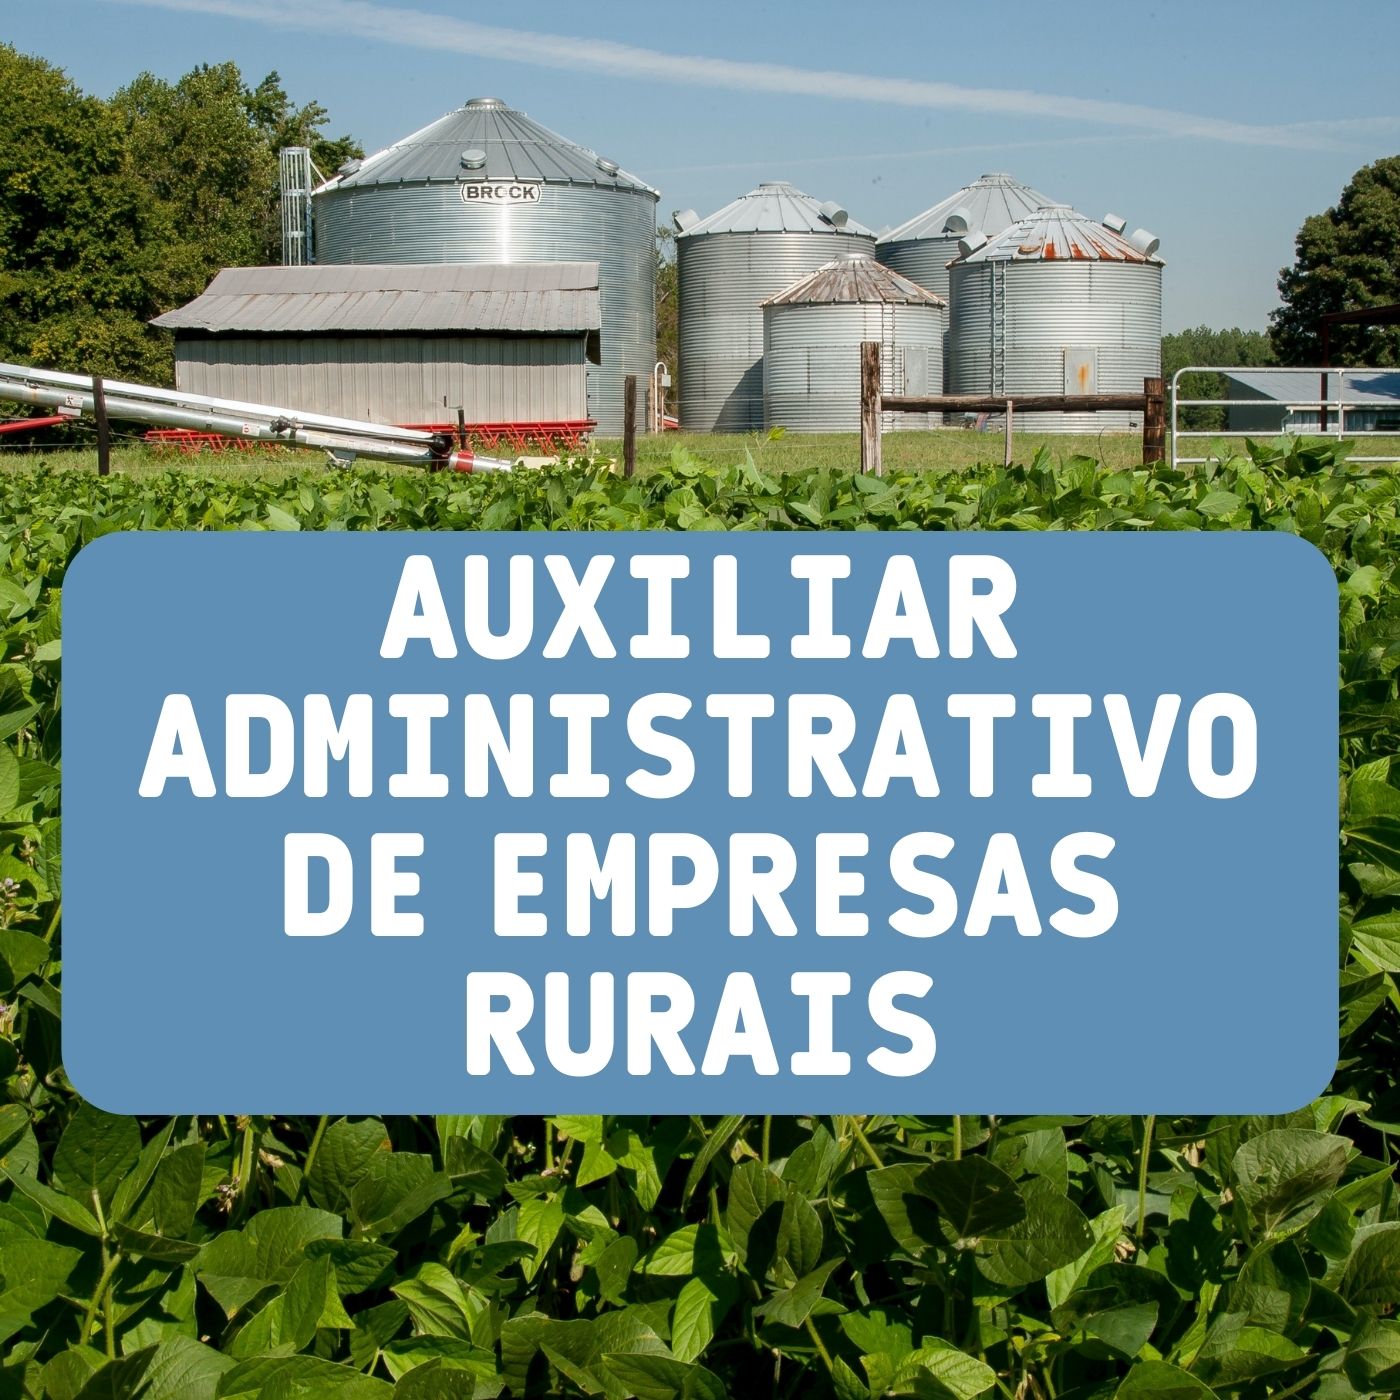 Qualificação profissional em auxiliar administrativo de empresas rurais - Goiás Tec